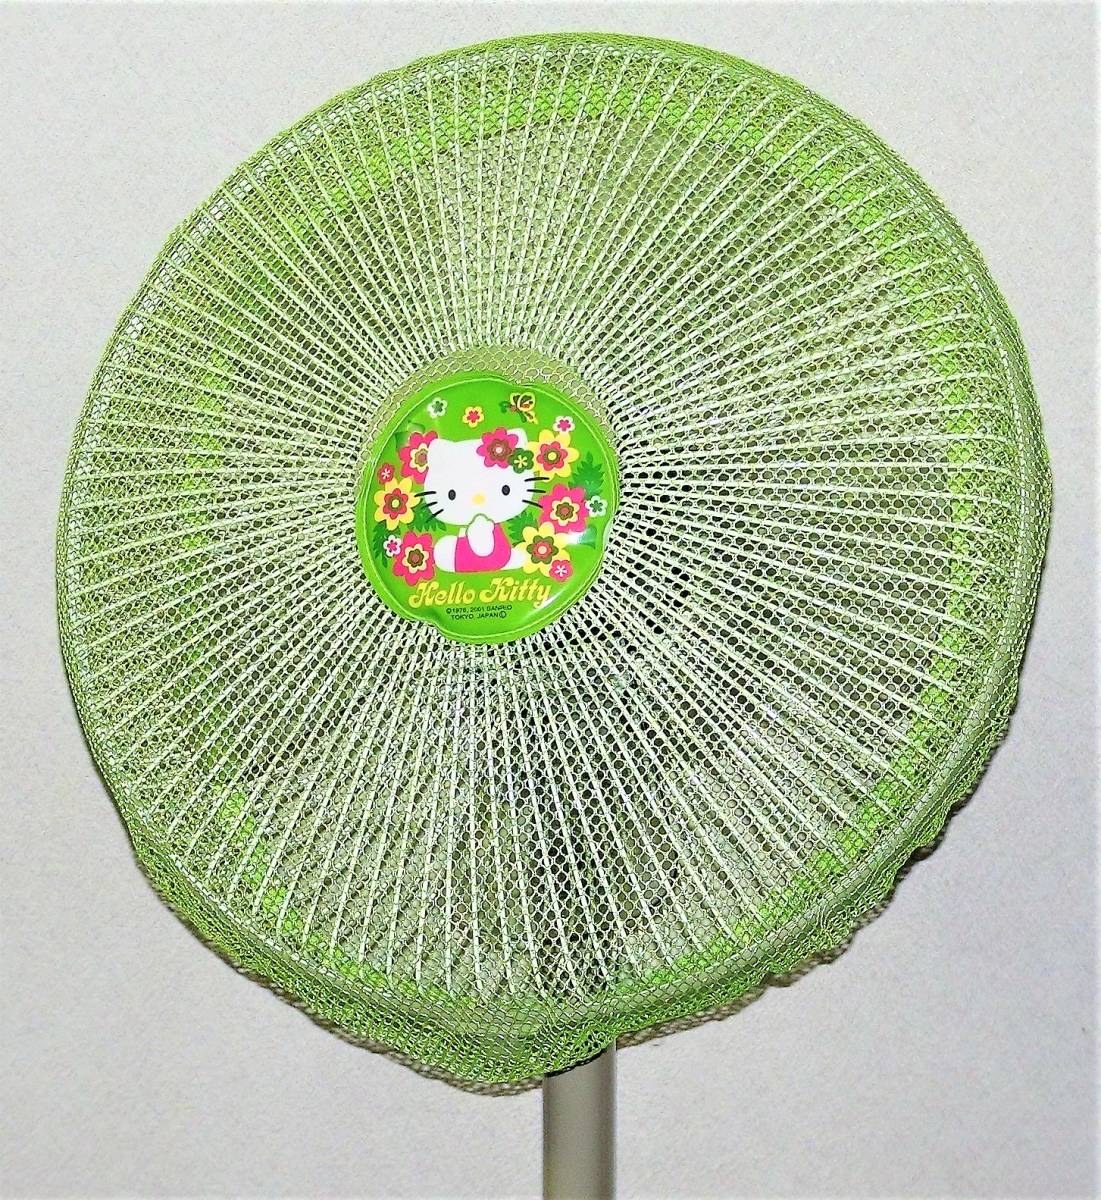 （ вентилятор  для  *  ... сетка ）... вентилятор  ребенок ... сетка 　...　 диаметр 40㎝　 light  зеленый 　 покупка   стоимость ：￥1,080  йен 